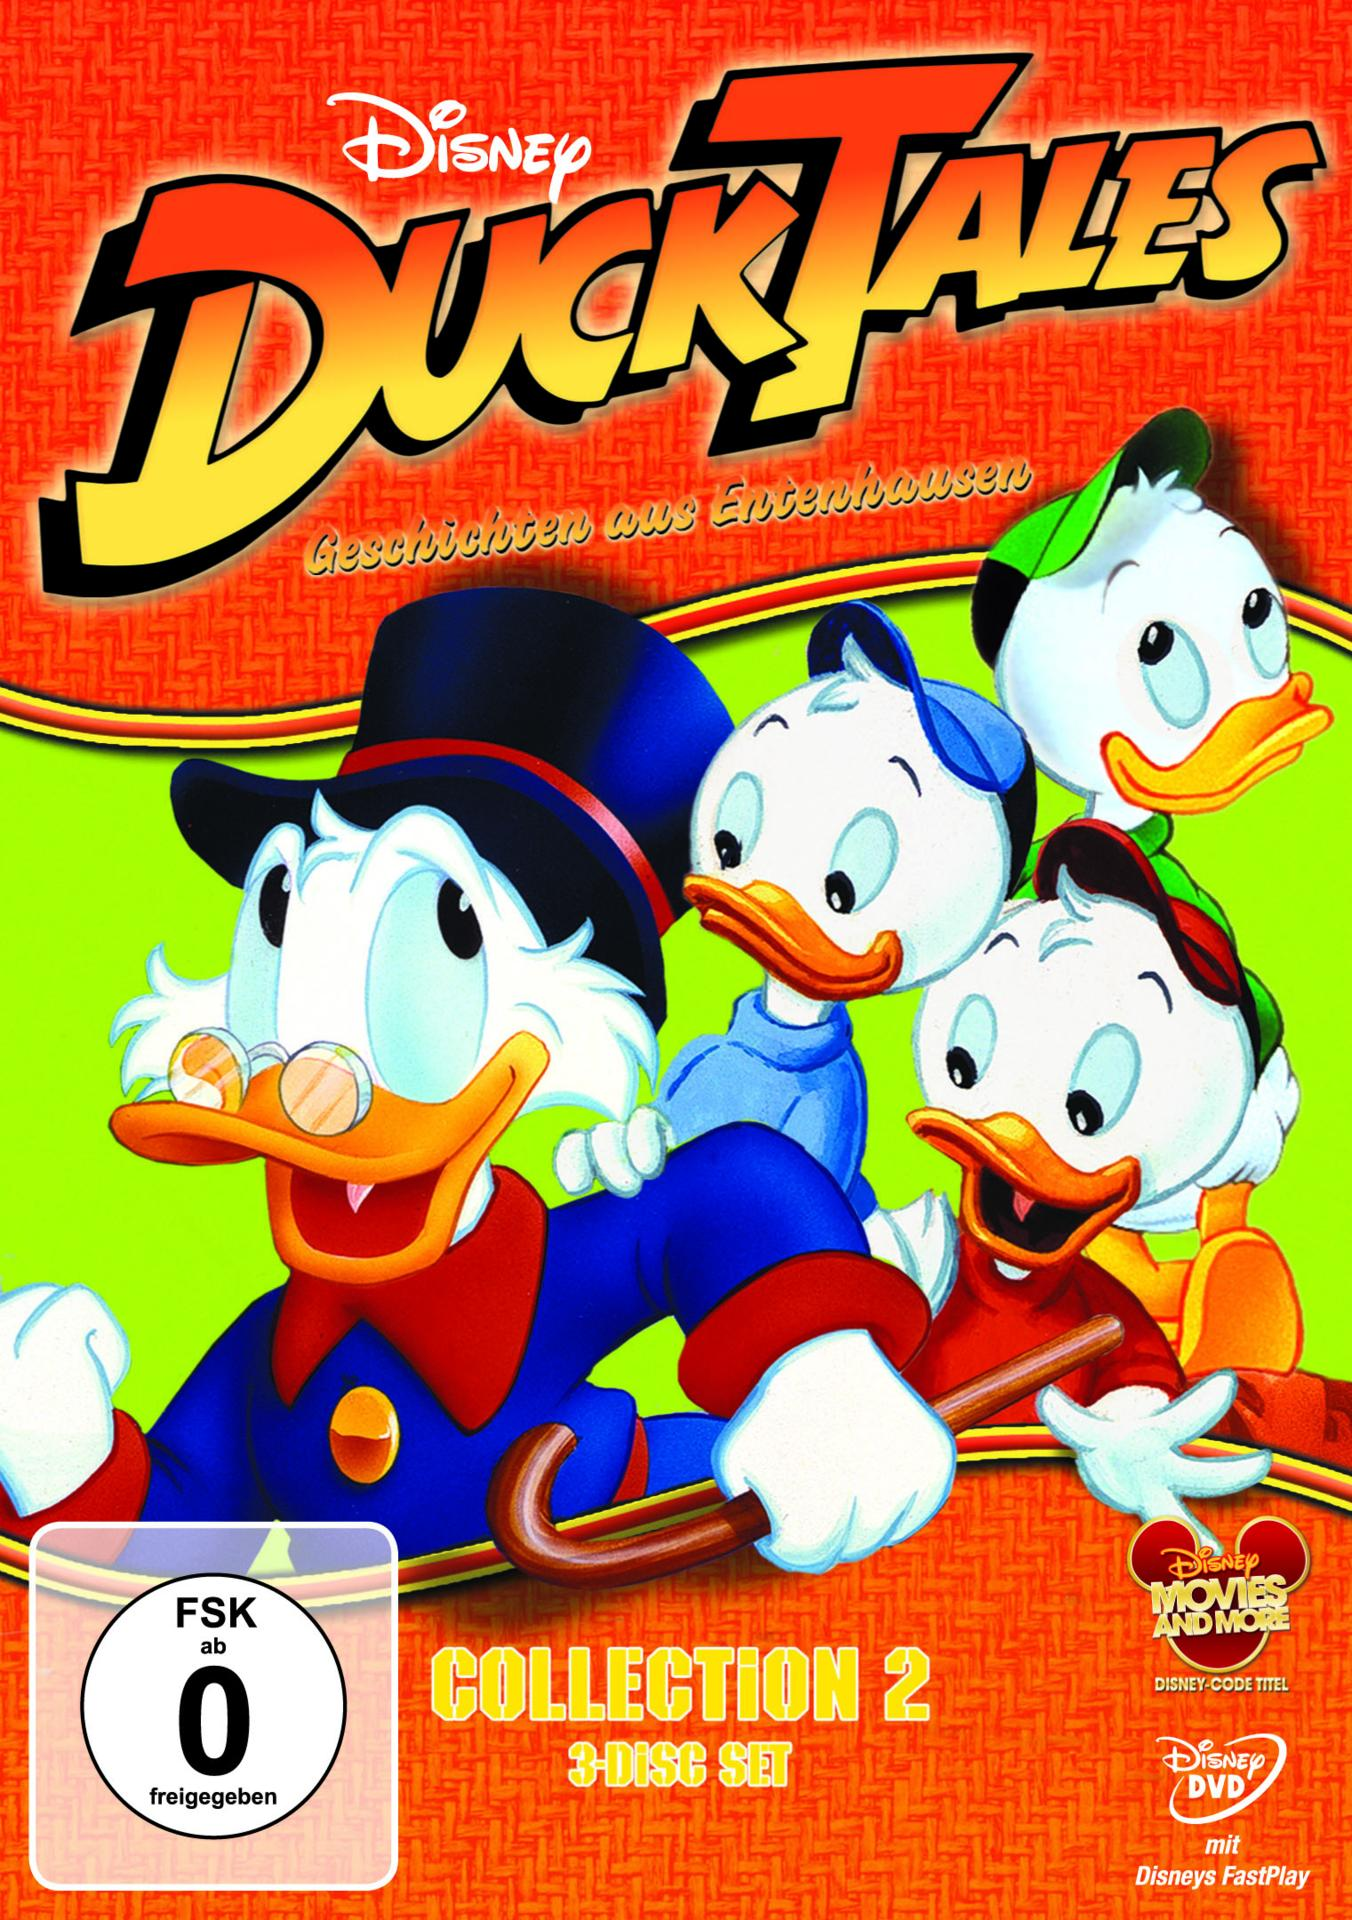 Ducktales - Geschichten aus Entenhausen Collection 2 DVD